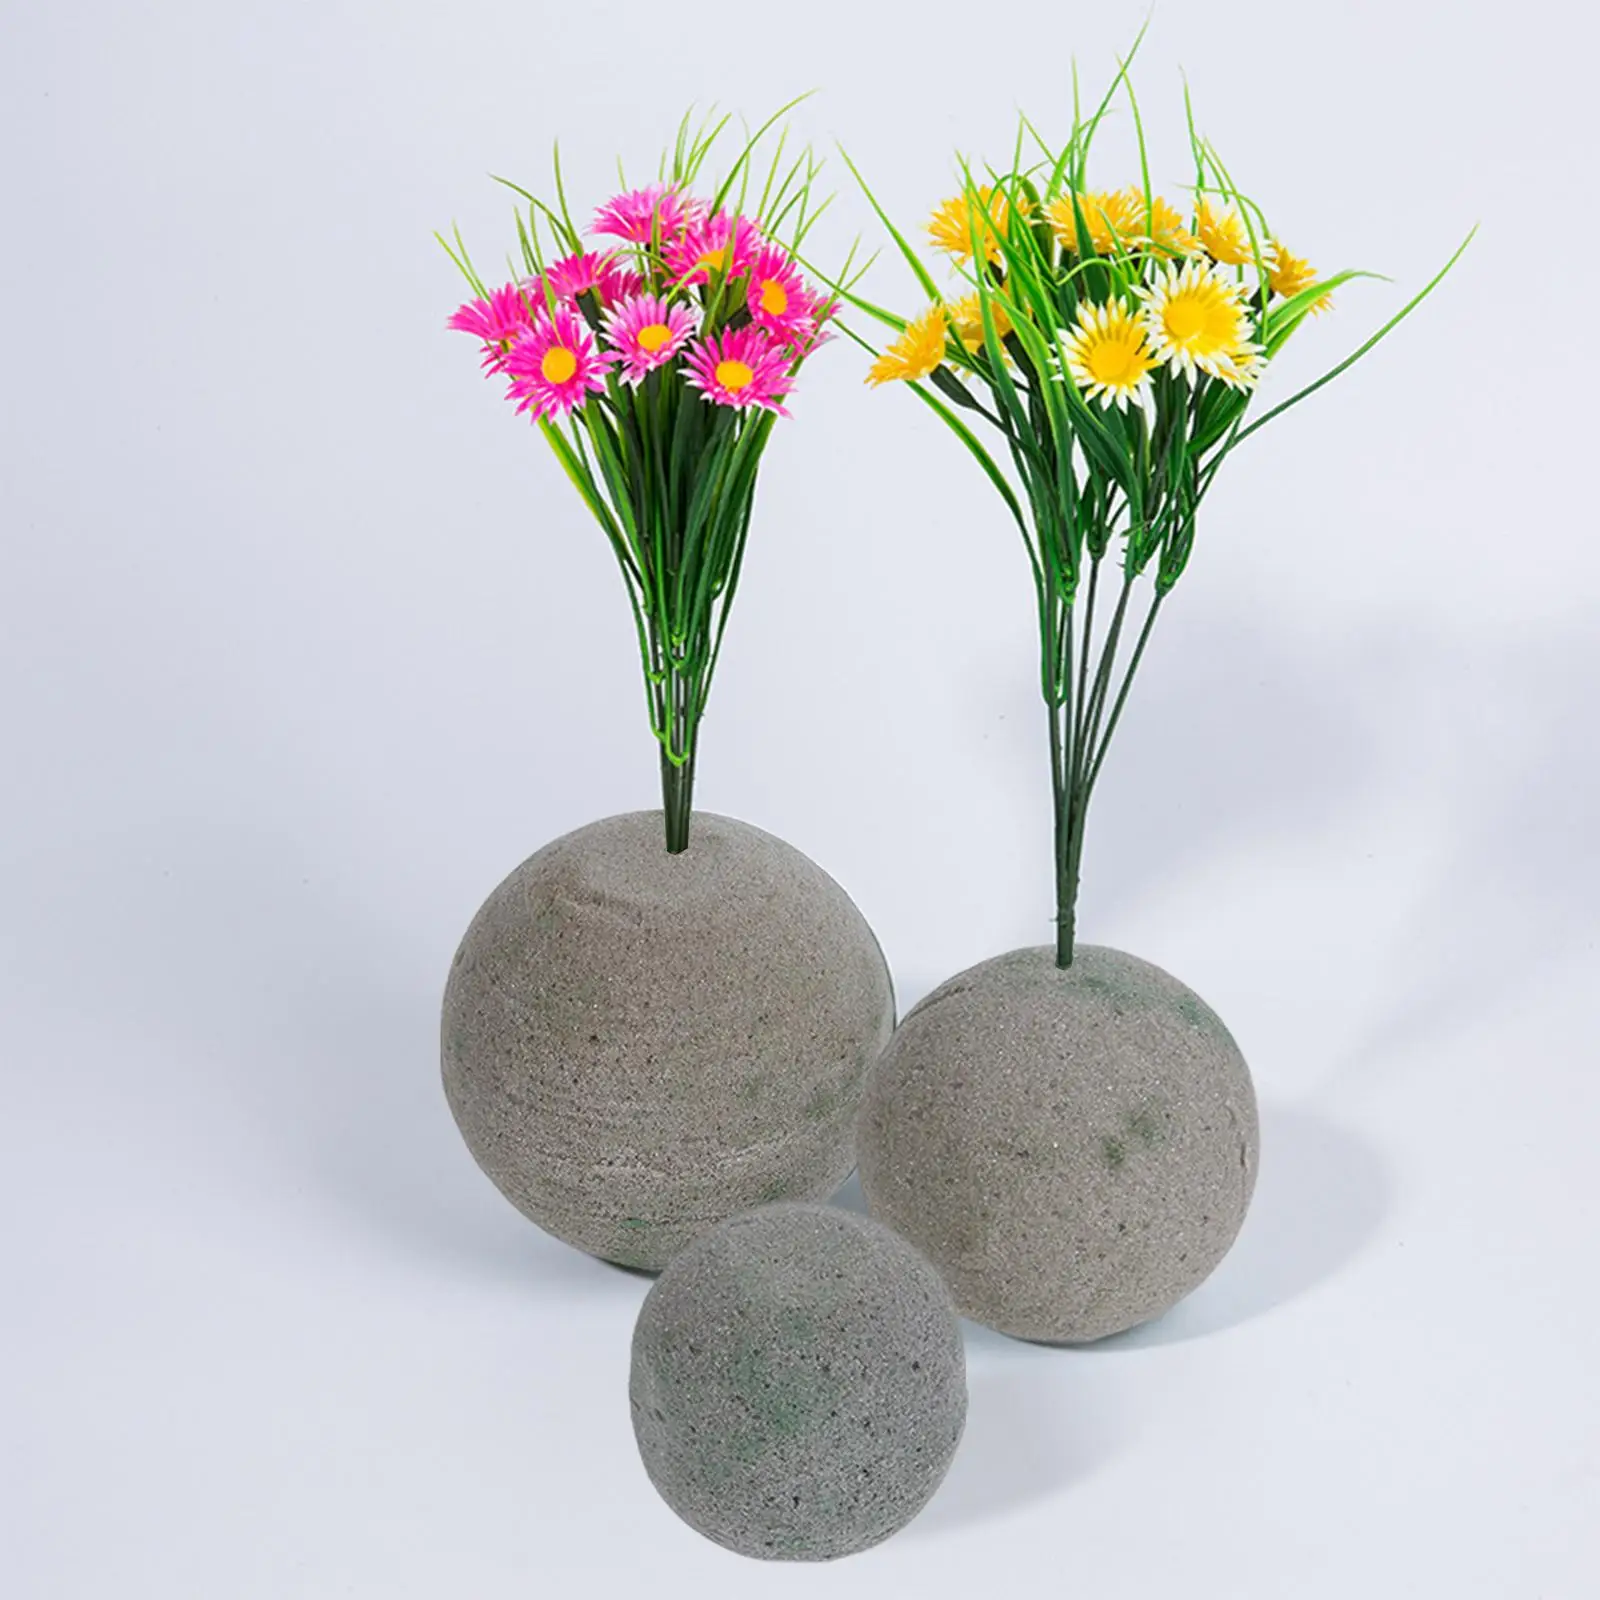 3 Pieces Floral Foam Brick Plant Foams Base for Florist Garden DIY Crafts